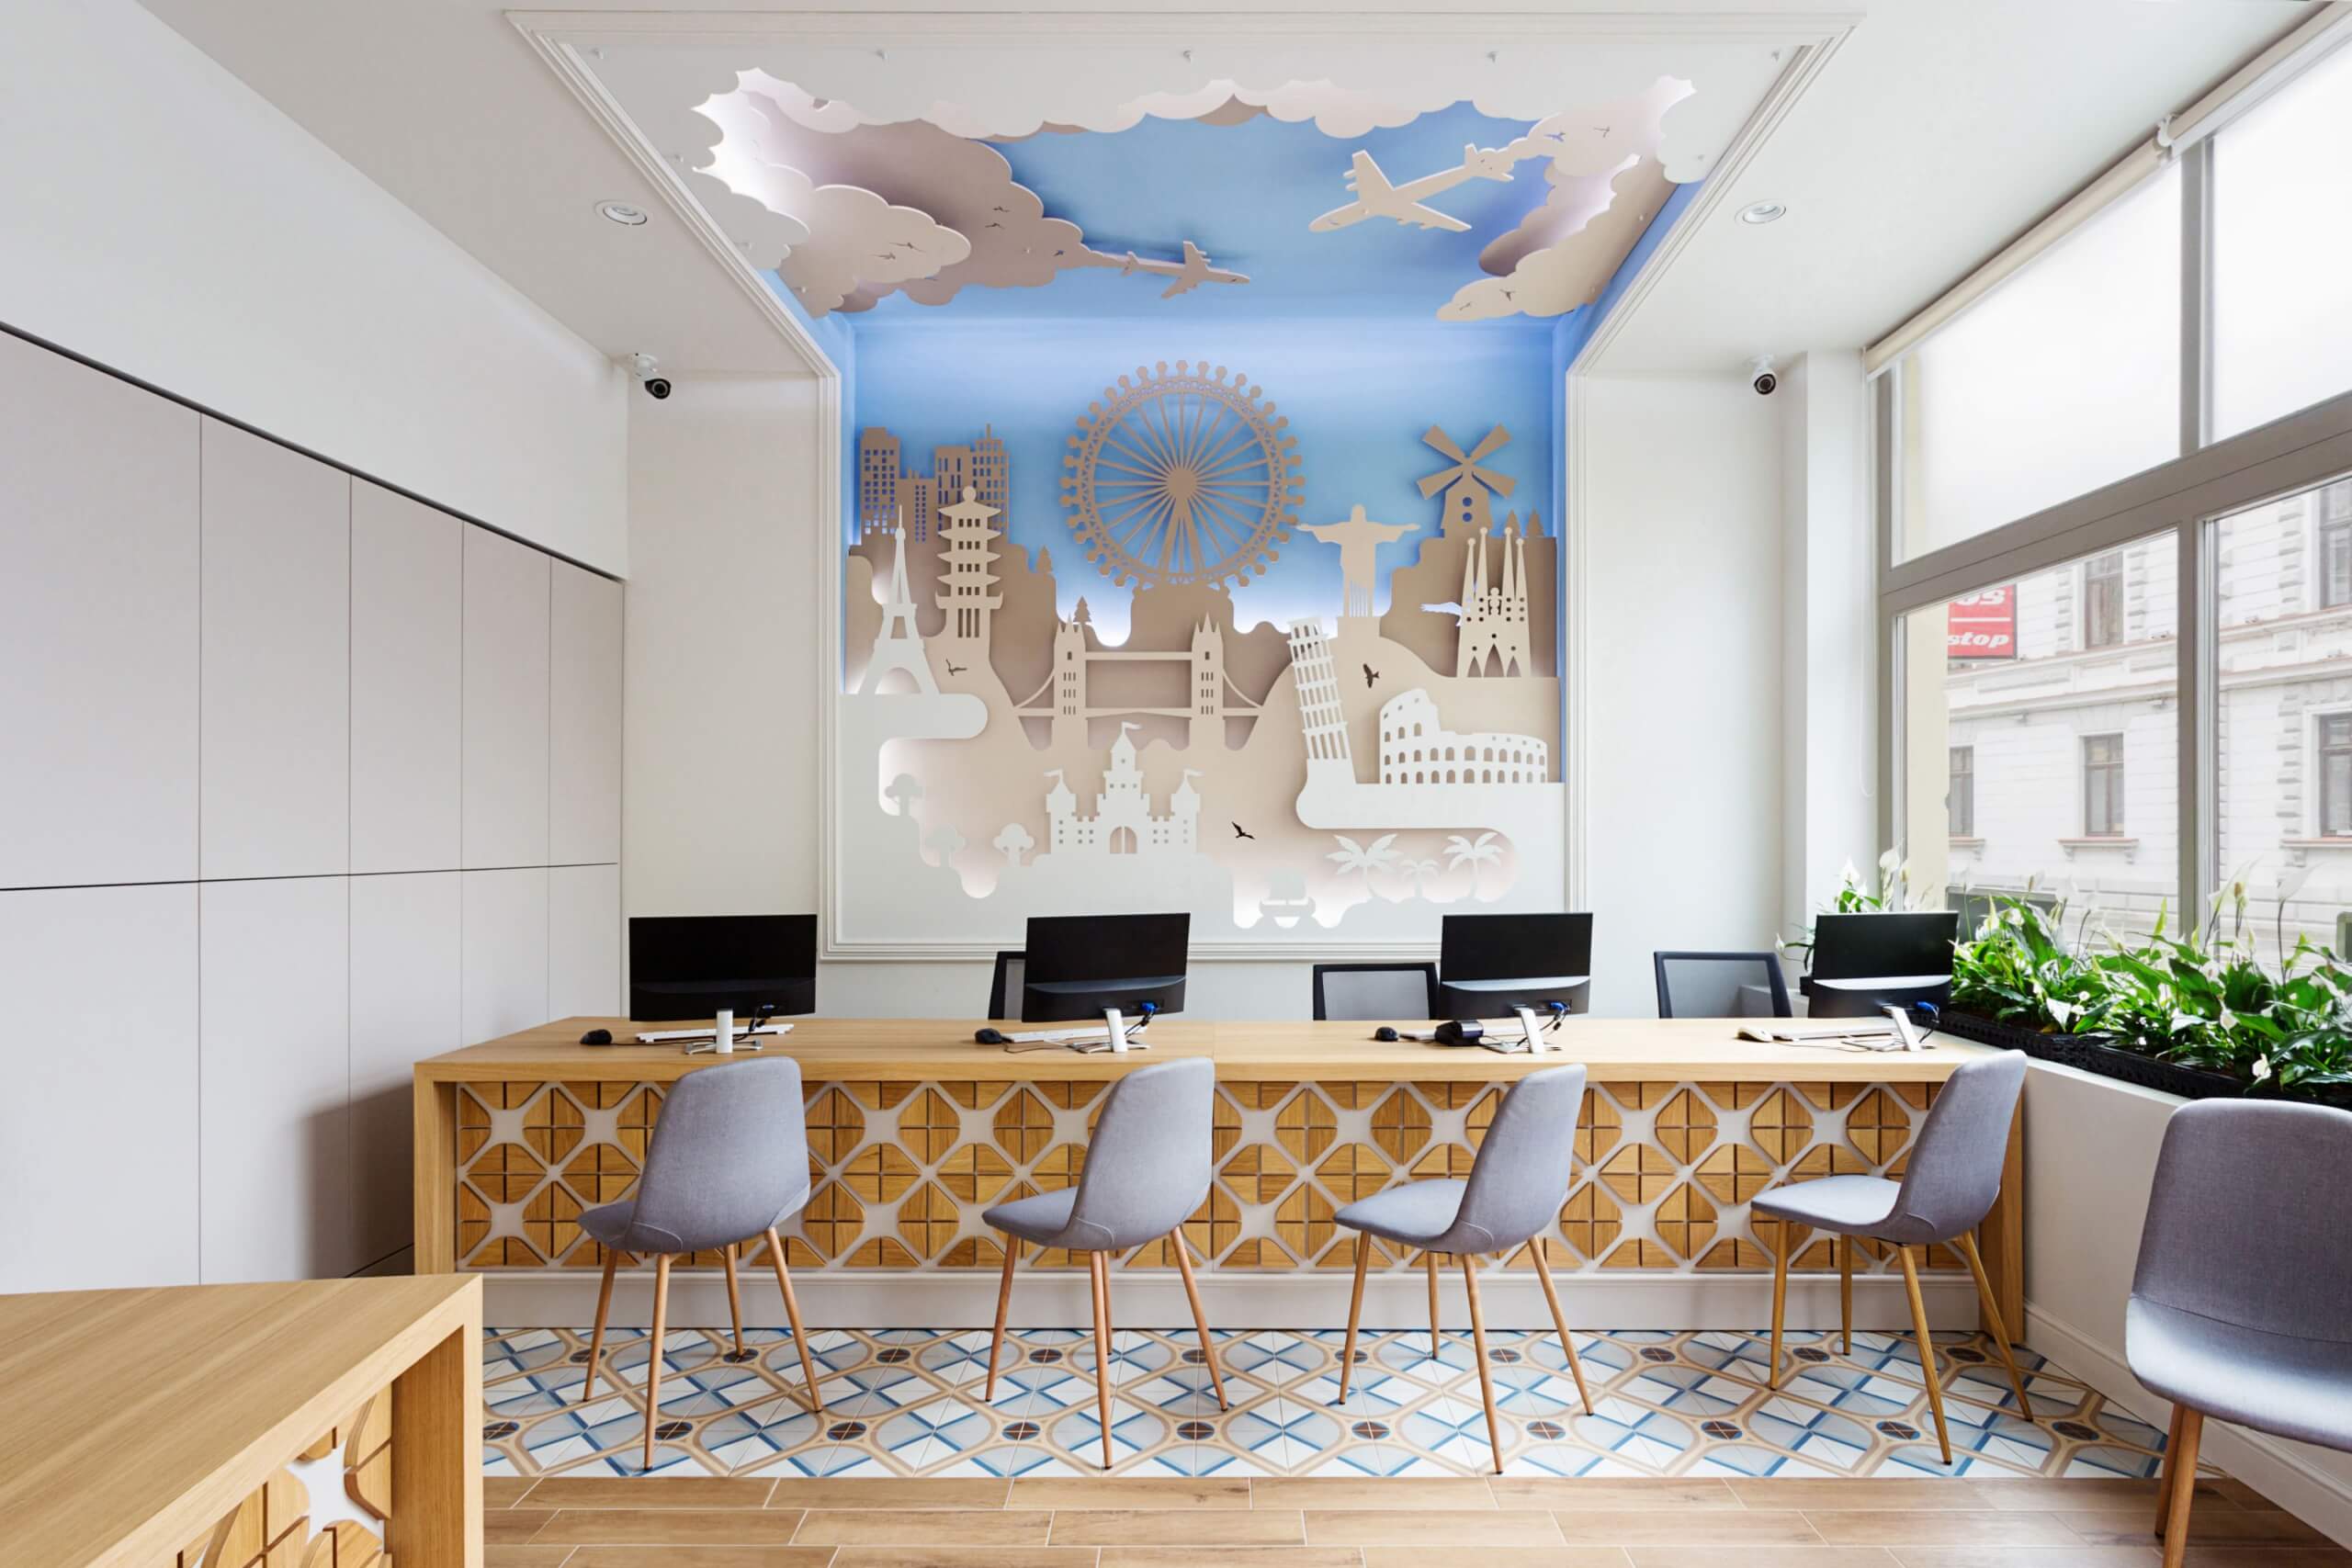 Mẫu thiết kế văn phòng du lịch đẹp với bức tường và trần nhà mô phỏng bầu trời và những biểu tượng du lịch nổi tiếng